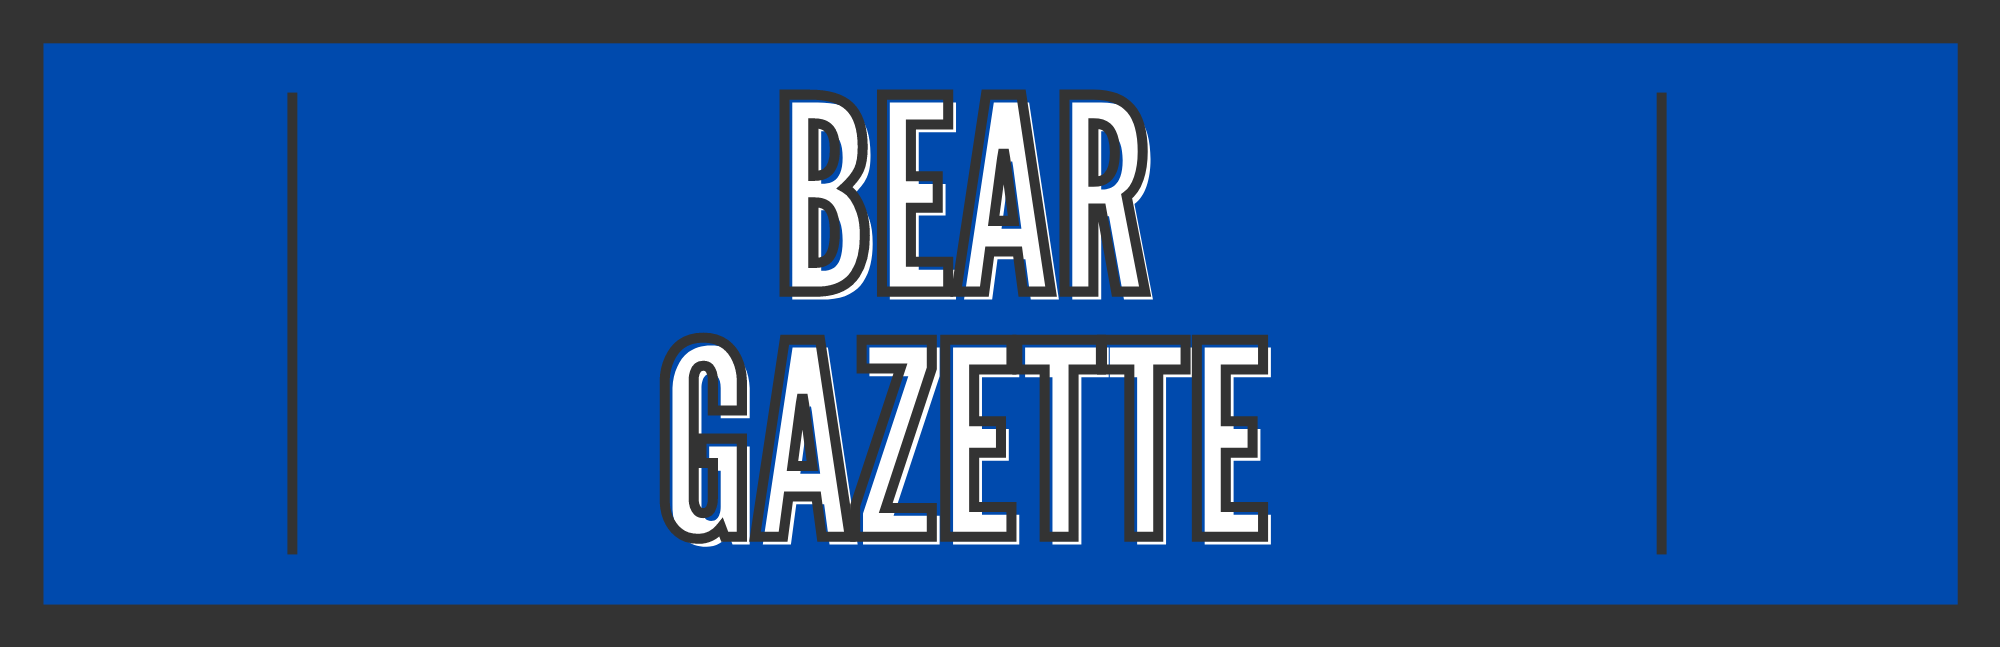 BEAR Gazette button